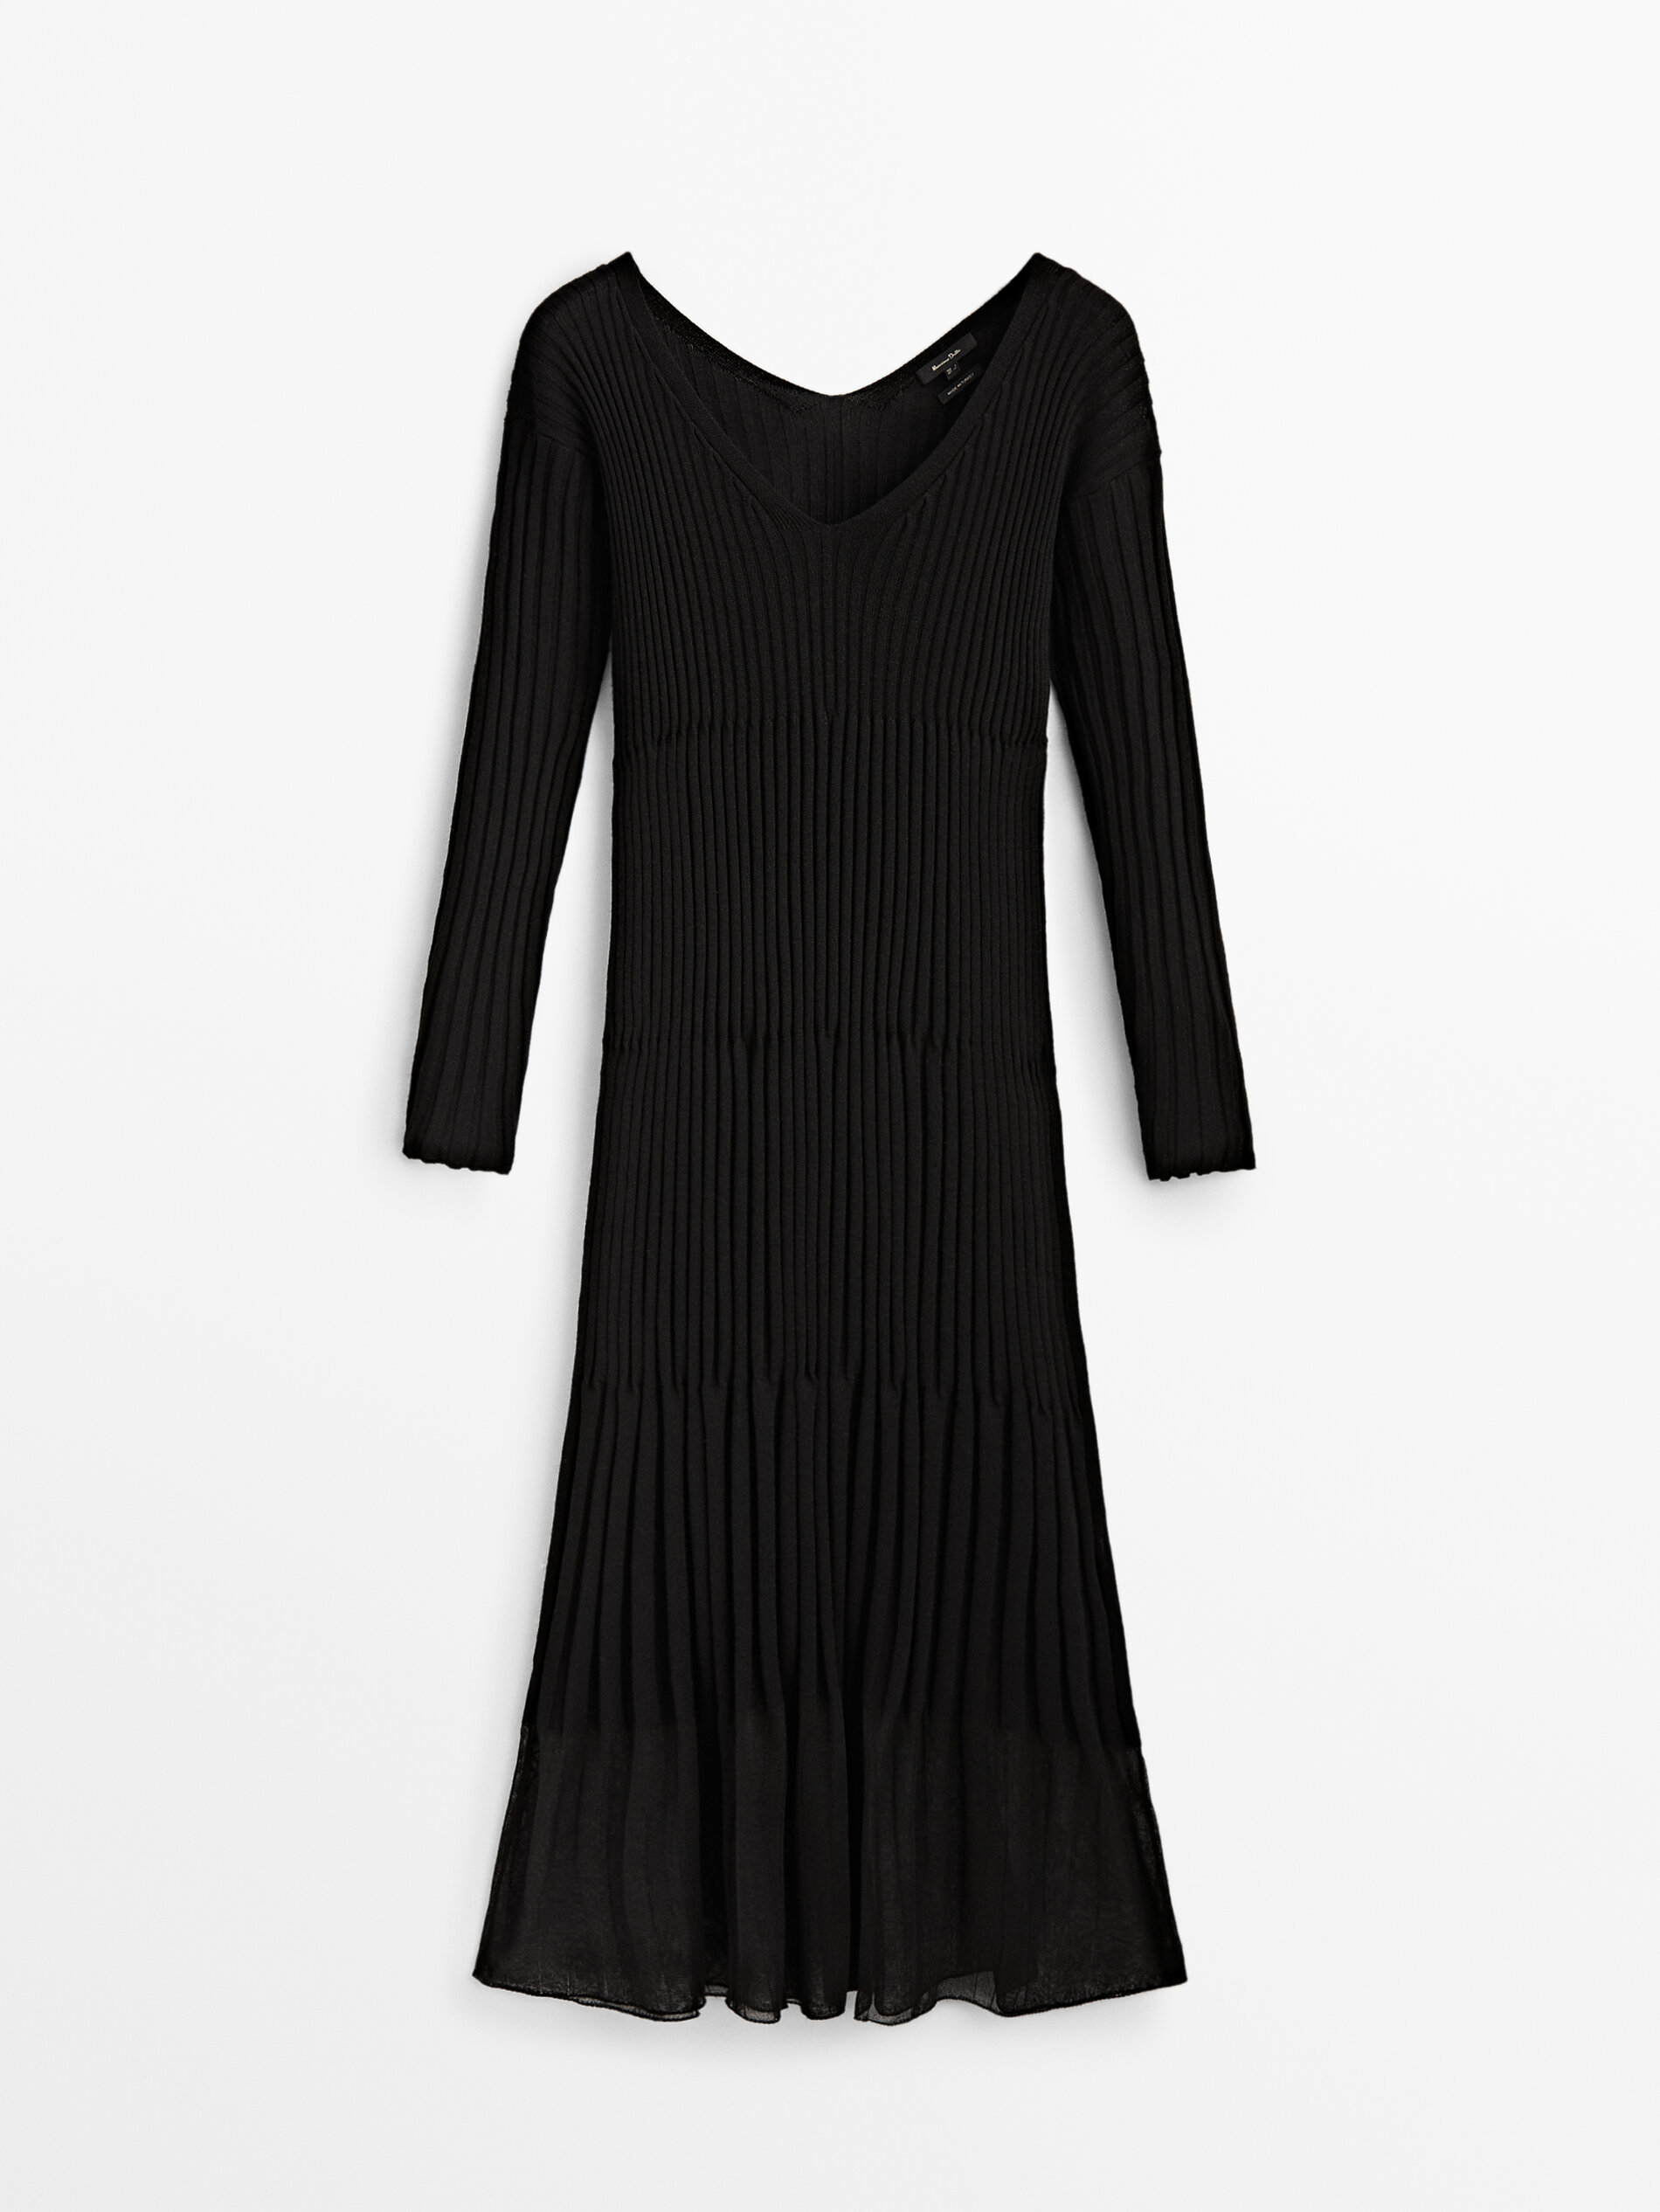 Vestido negro de Massimo Dutti (69,95 euros)